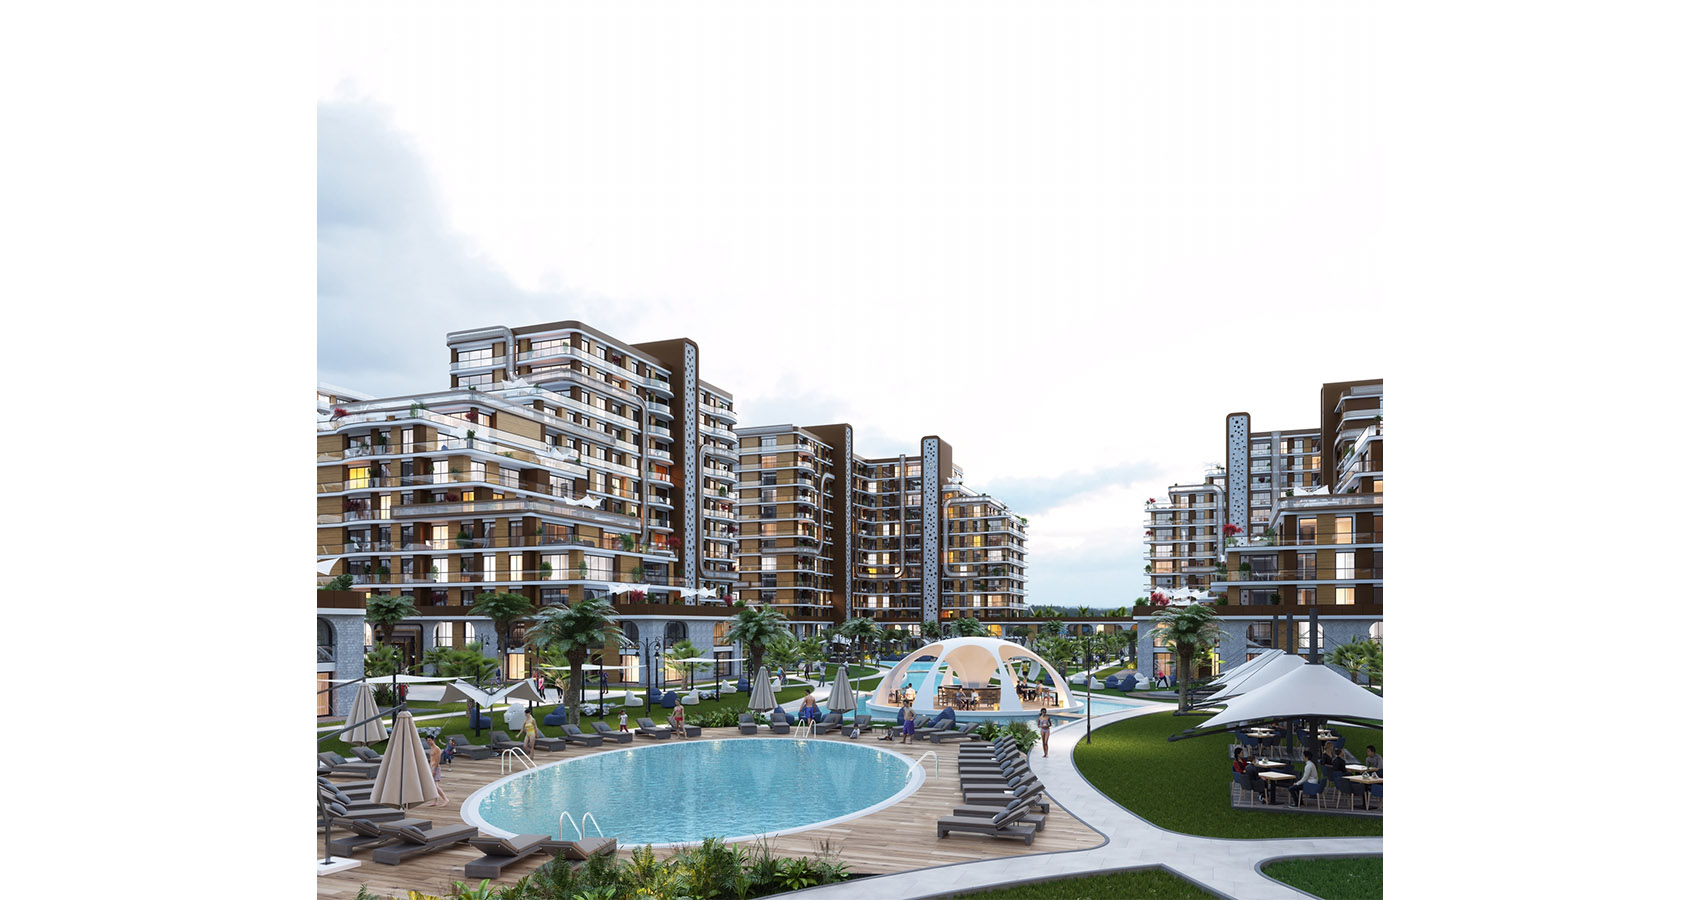 D.C Projekt moderner städtischer Wohnbau Istanbul/Beylikduzu